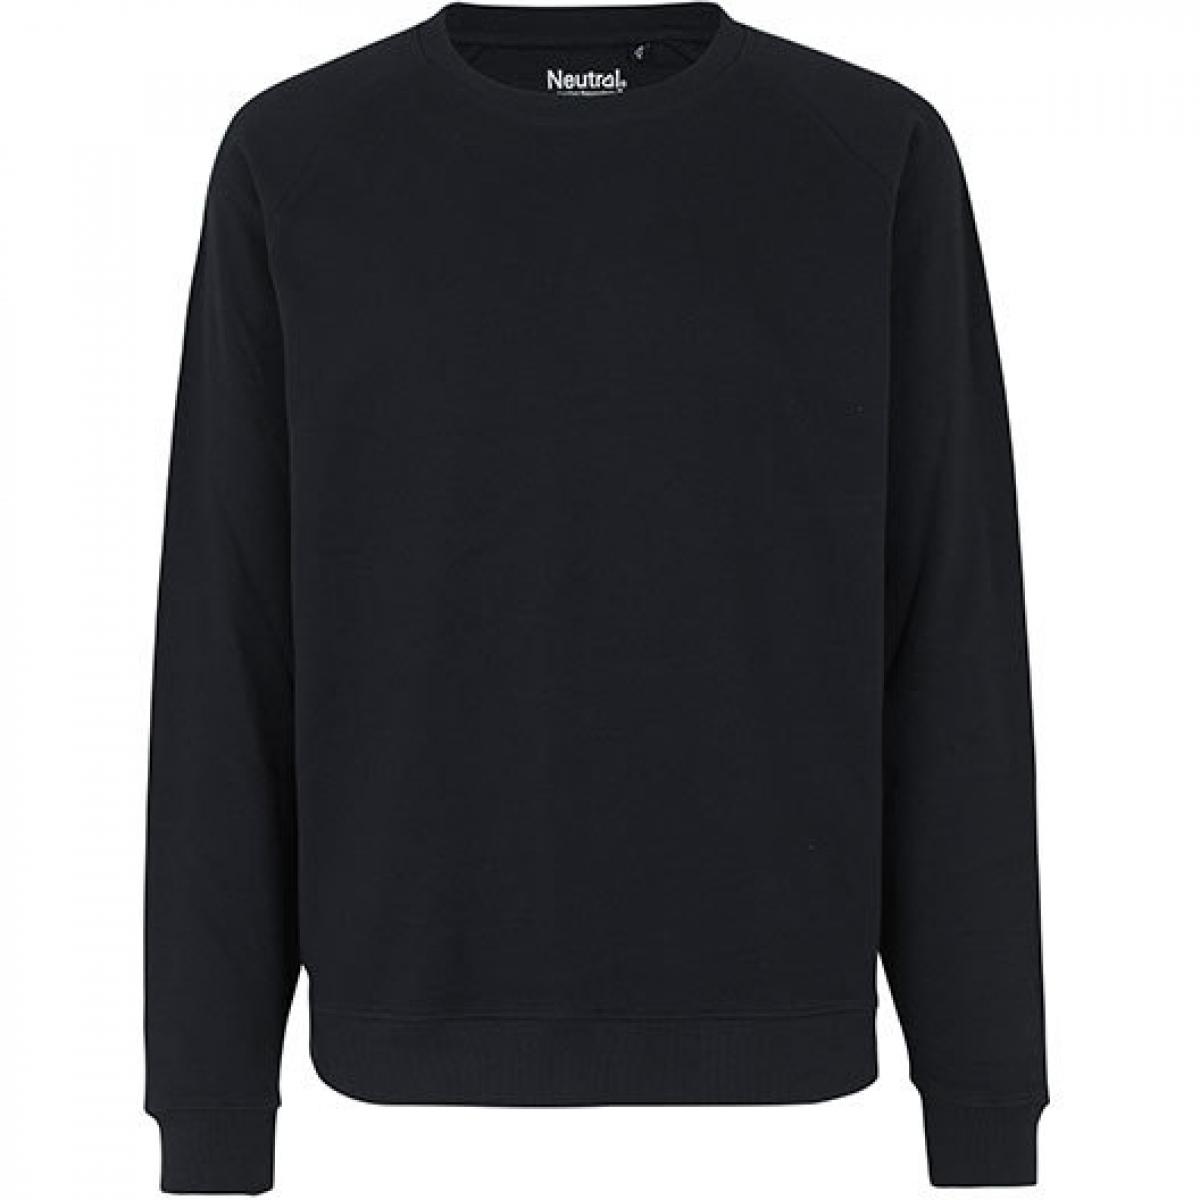 Hersteller: Neutral Herstellernummer: O69301 Artikelbezeichnung: Herren Workwear Sweatshirt - 80 % Bio-Baumwolle Farbe: Black